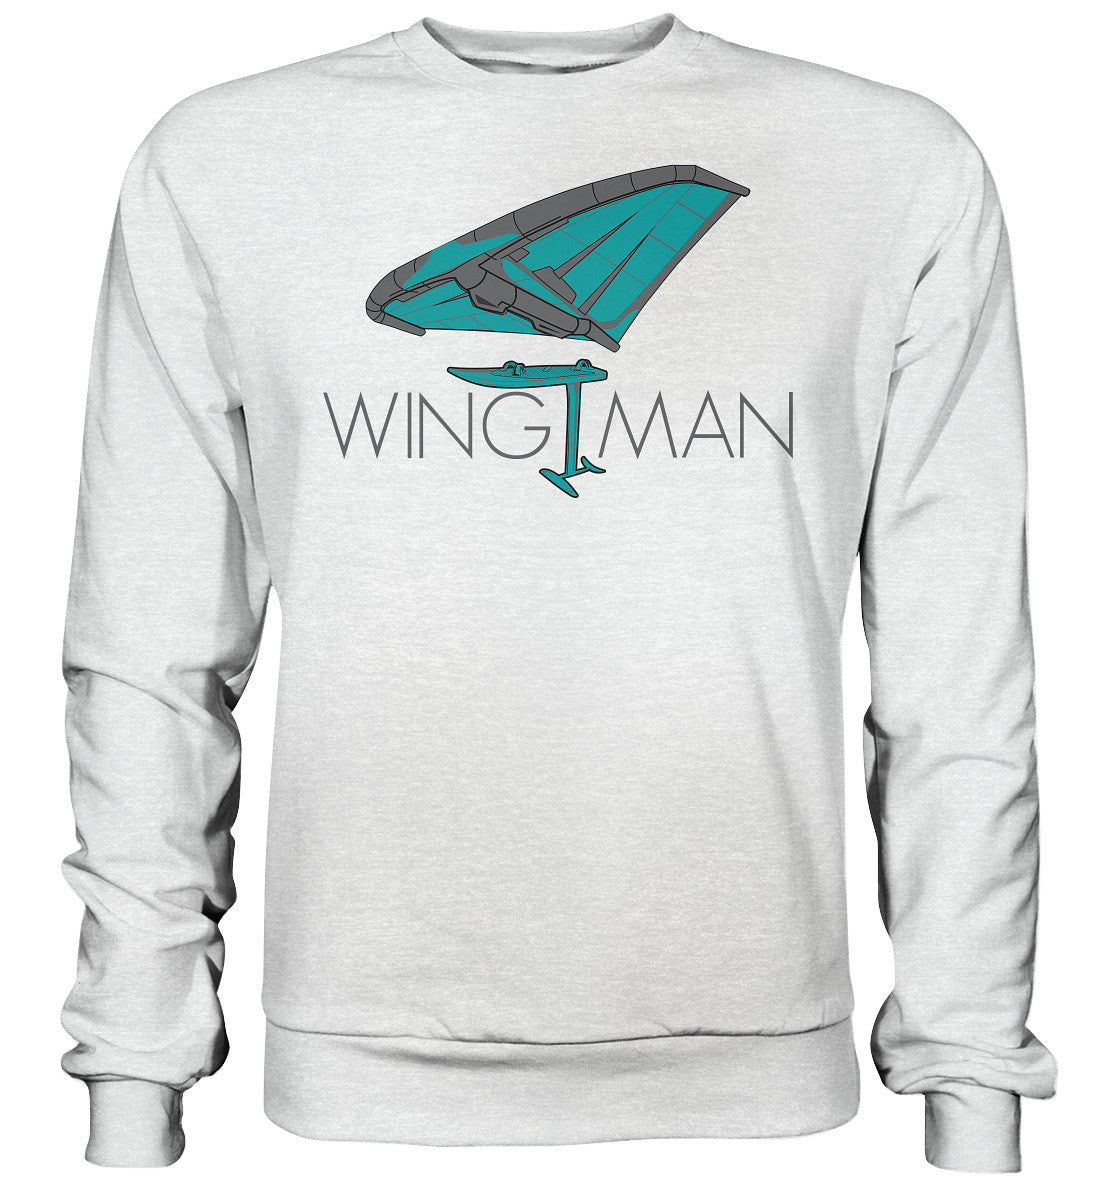 Wingfoiling-WINGMAN - Premium Sweatshirt